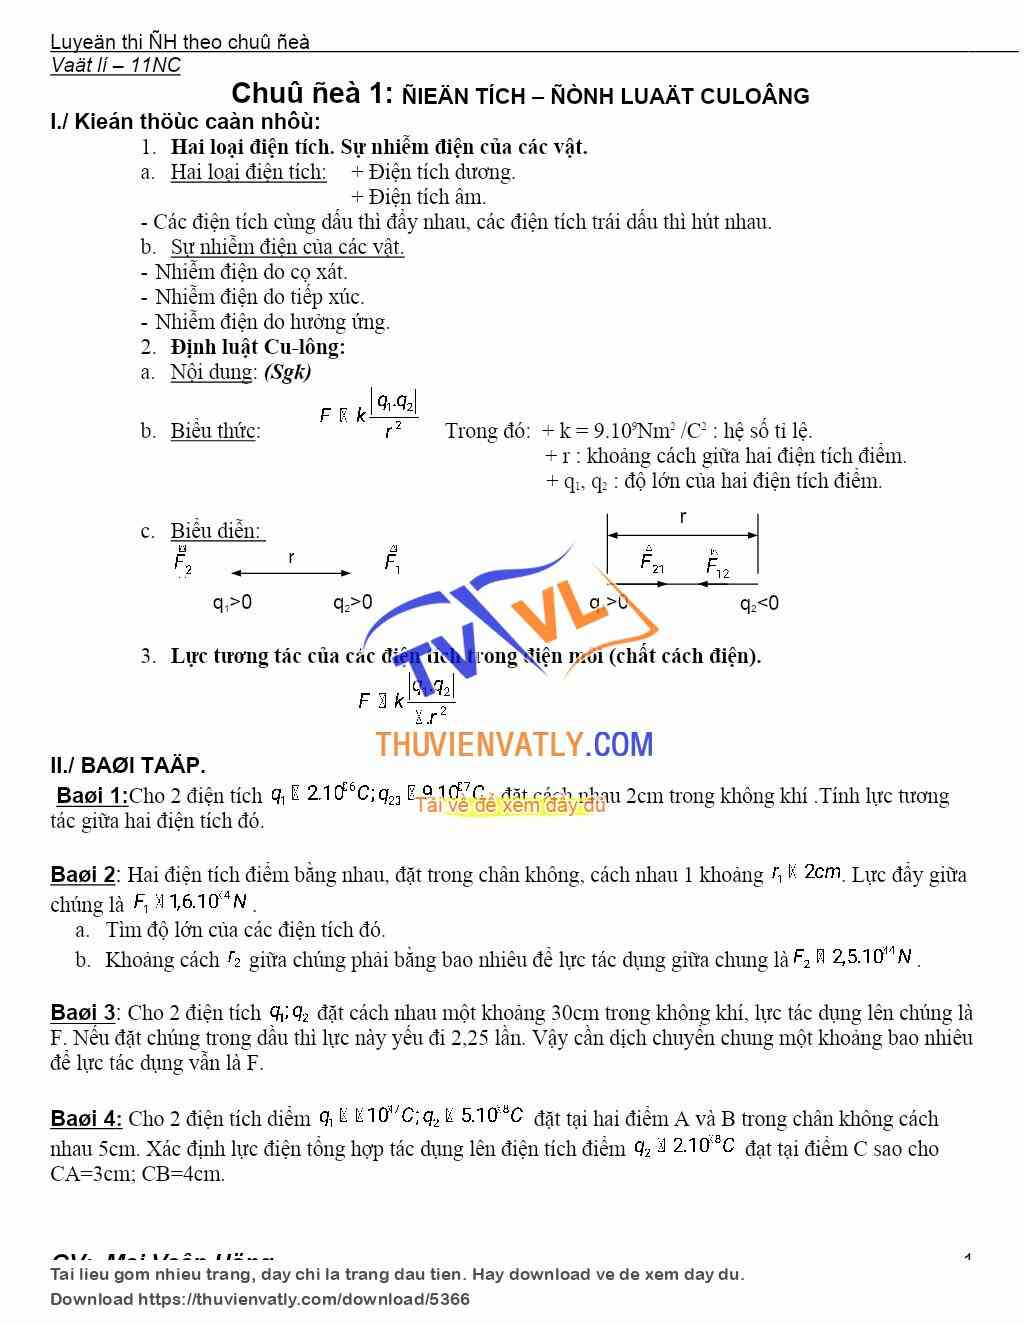 Chuyên đề vật lý 11 - Chương 1